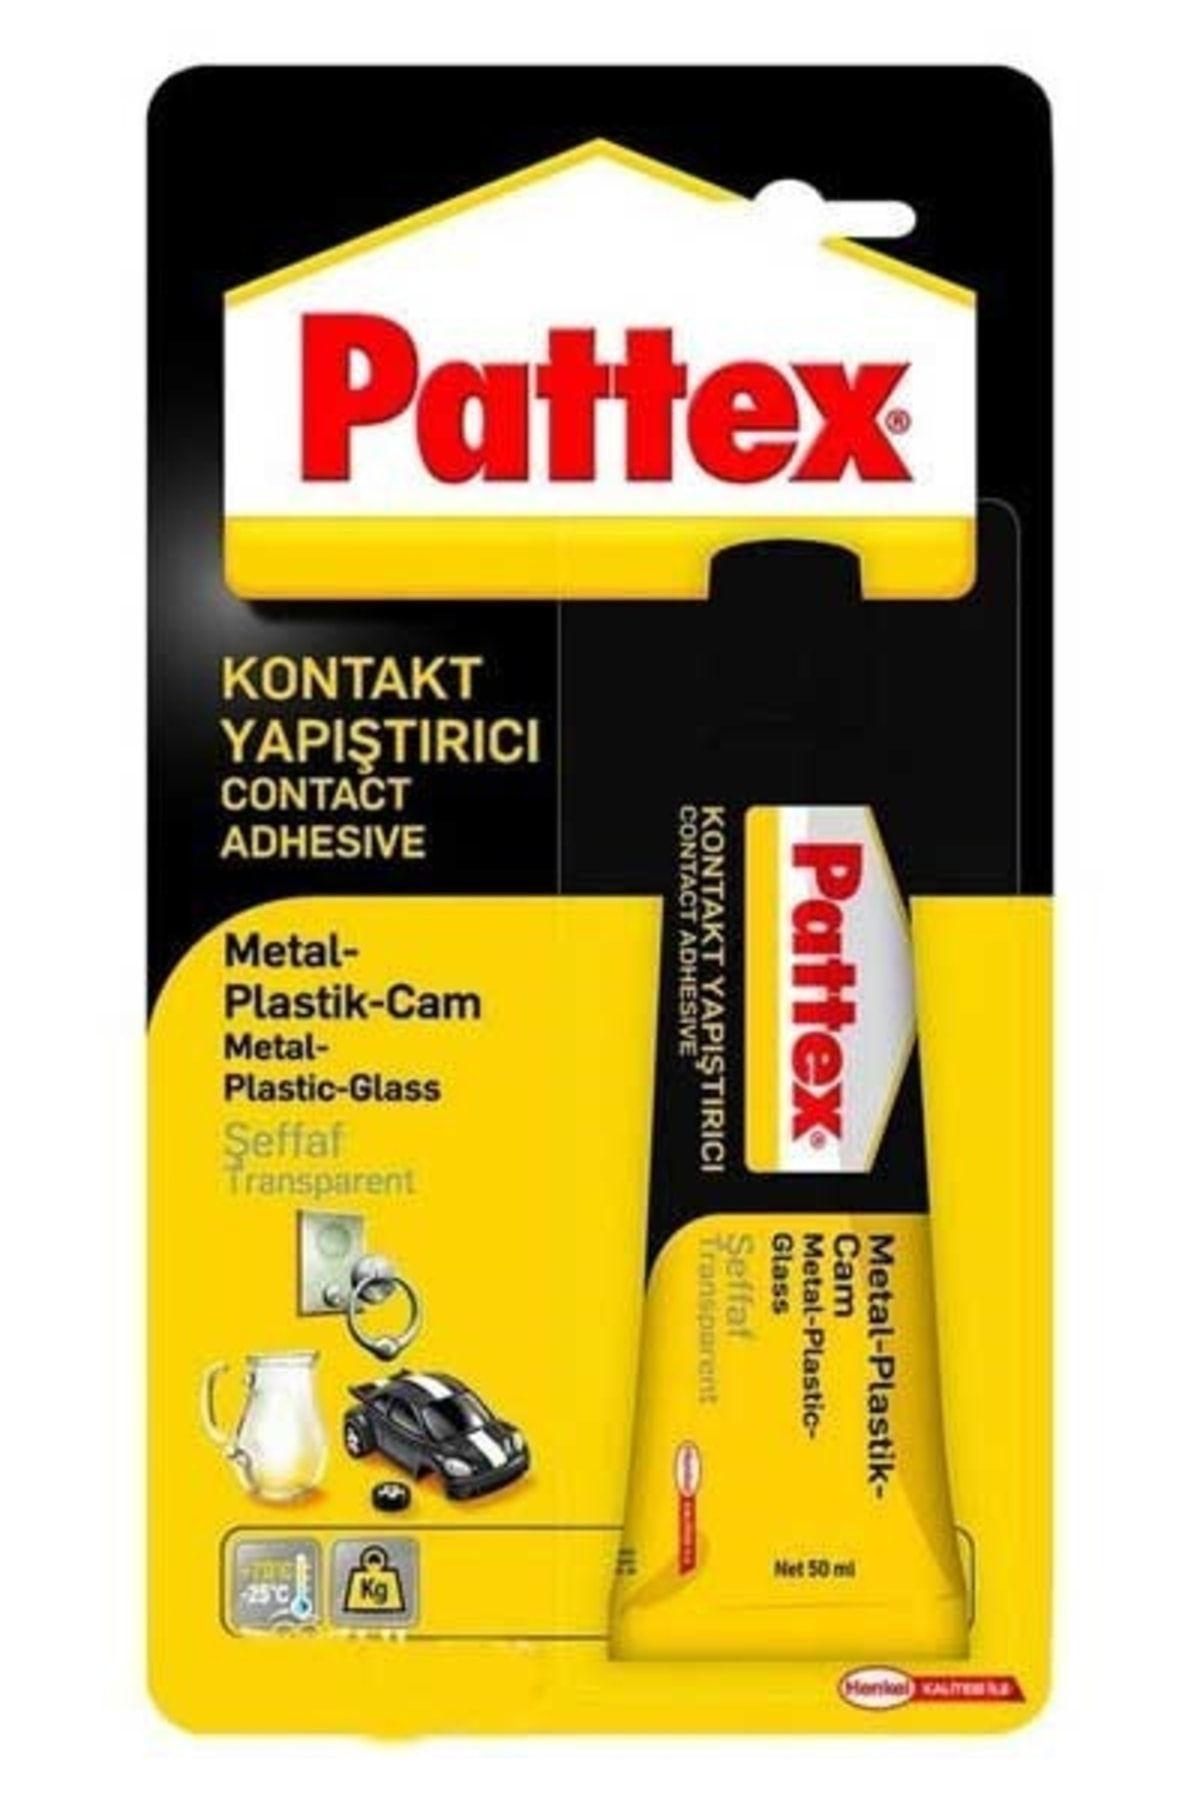 Pattex Yapıstırıcı Metal-plastık-cam 50gr 1176391-1419320